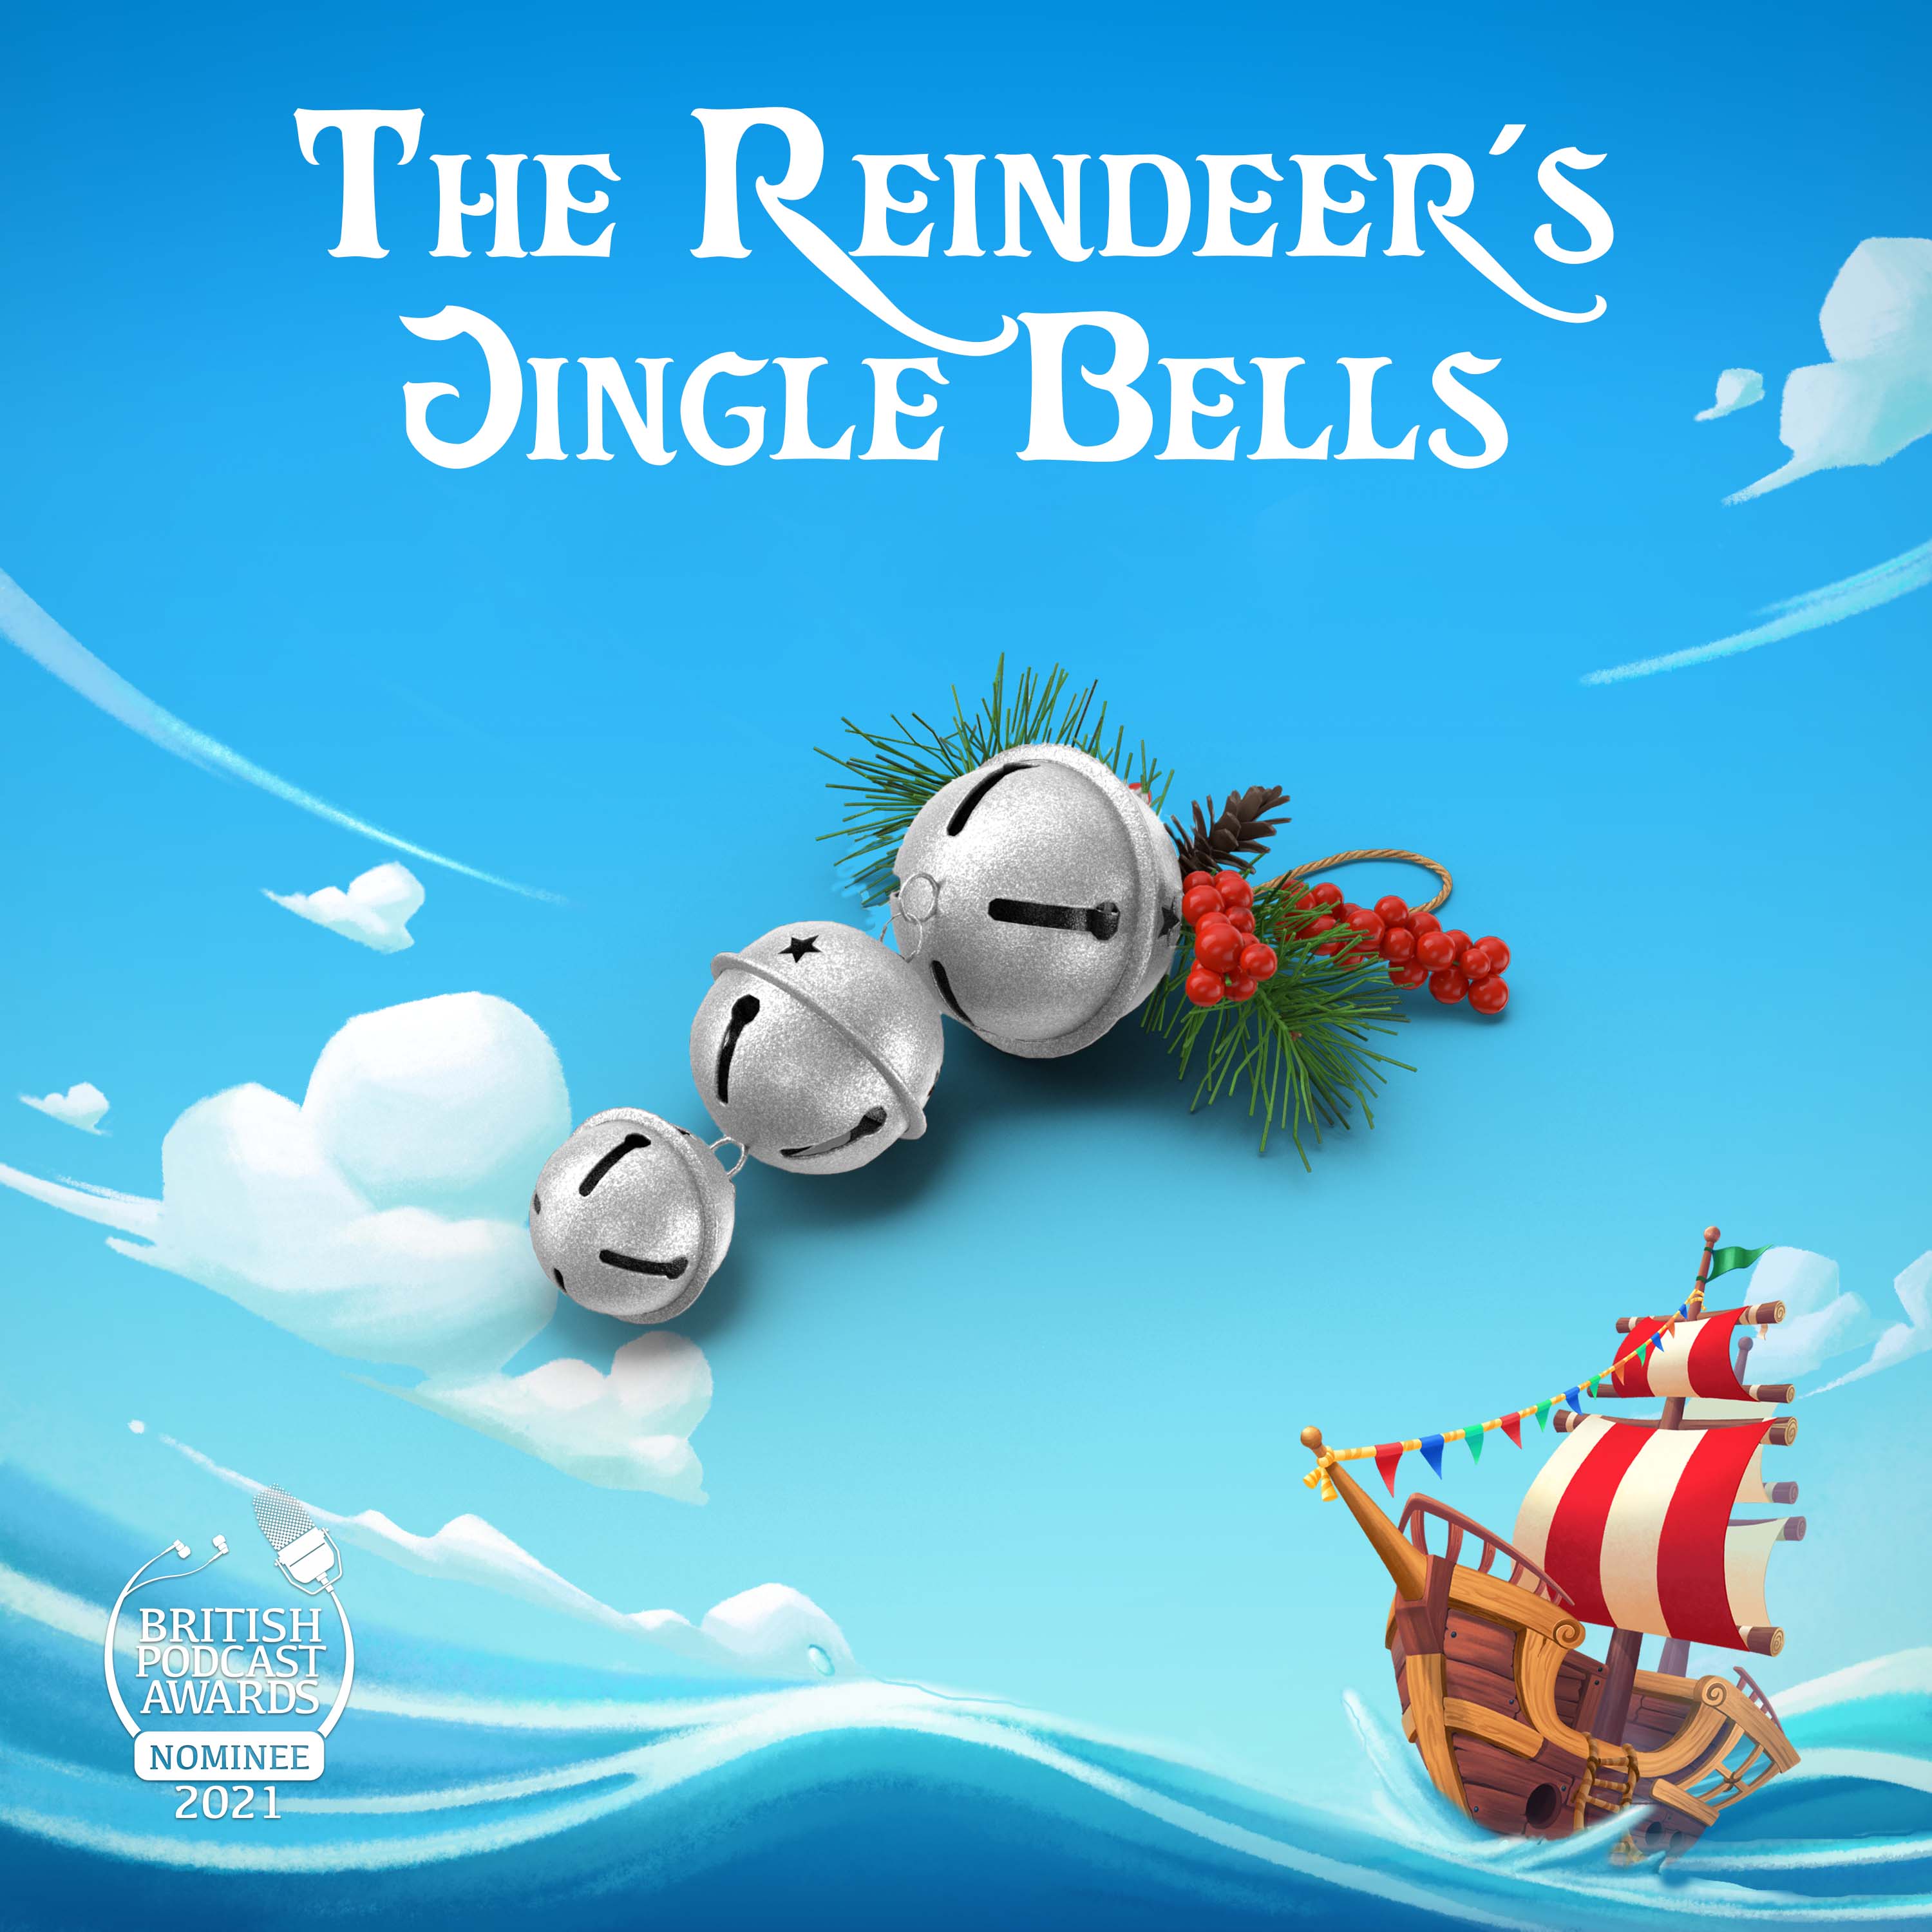 The Reindeer's Jingle Bells